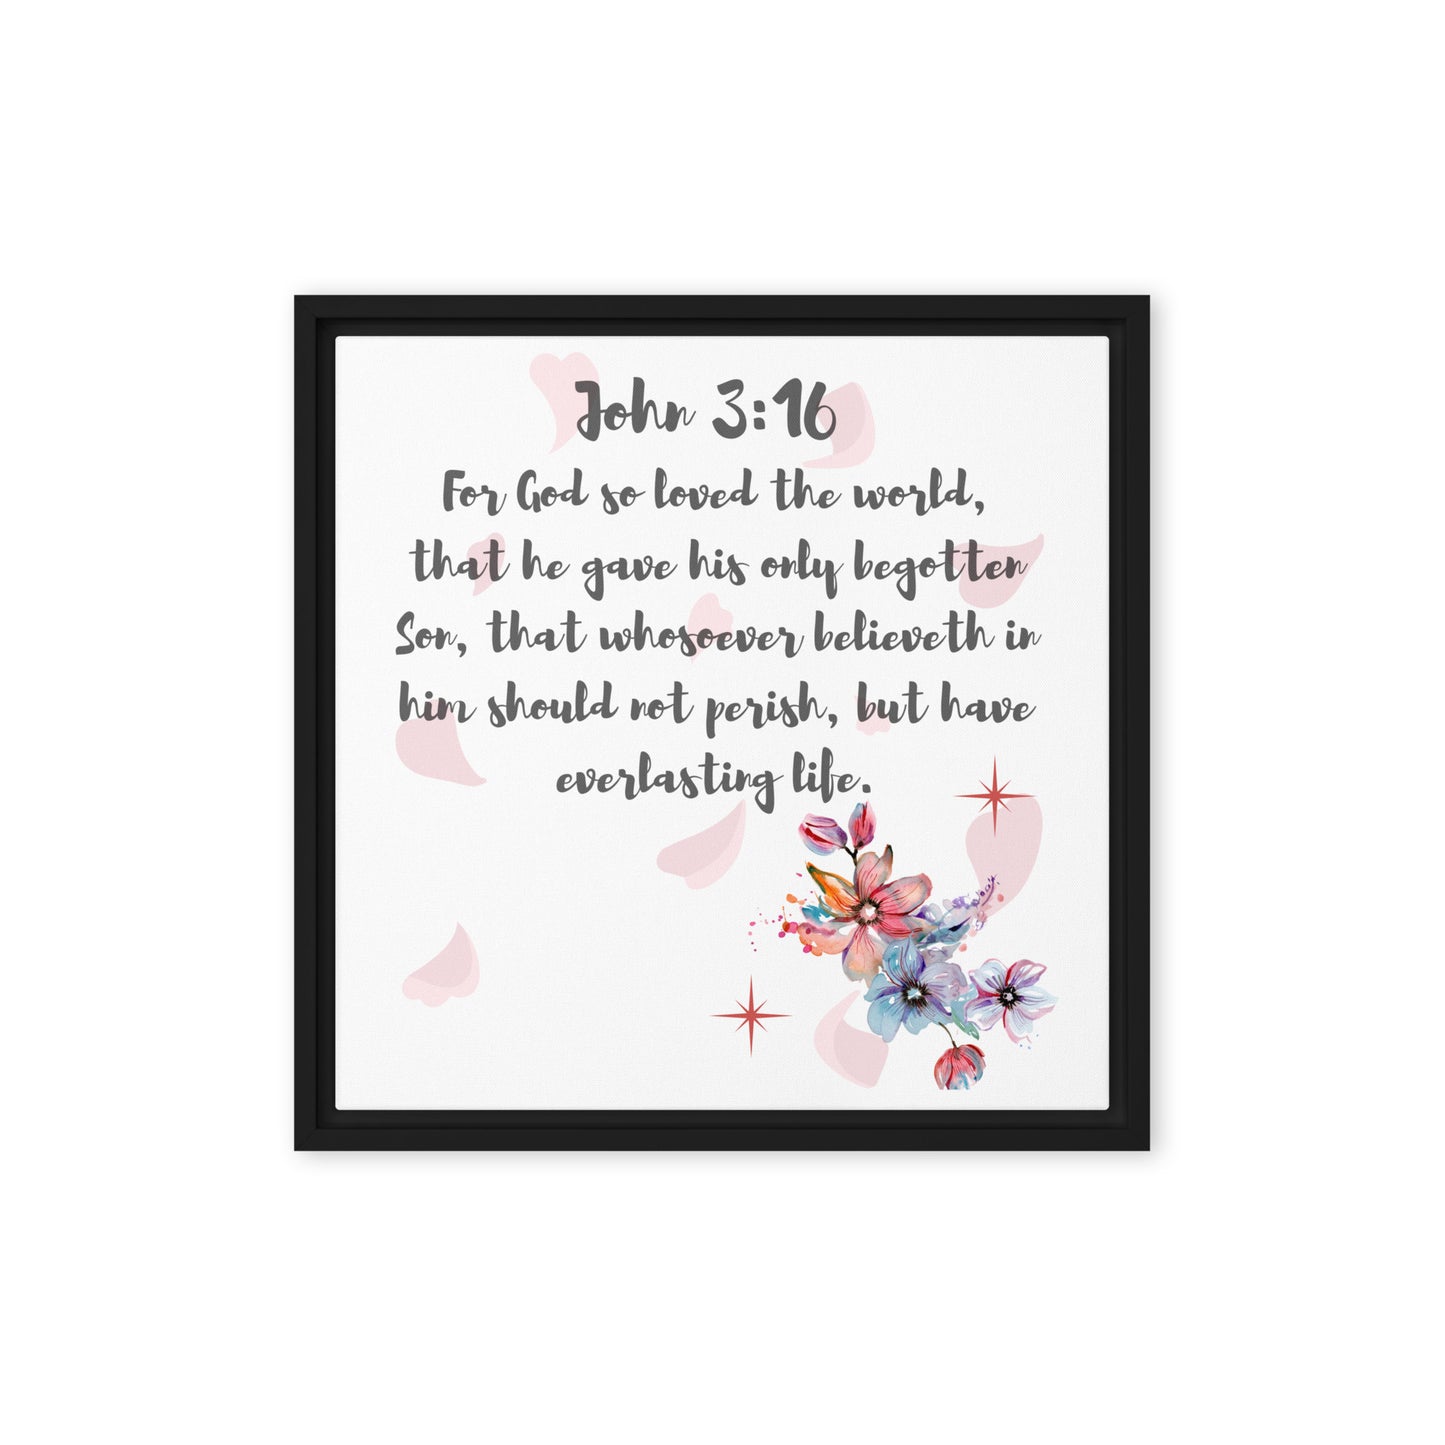 By Faith John 3:16 Framed Canvas